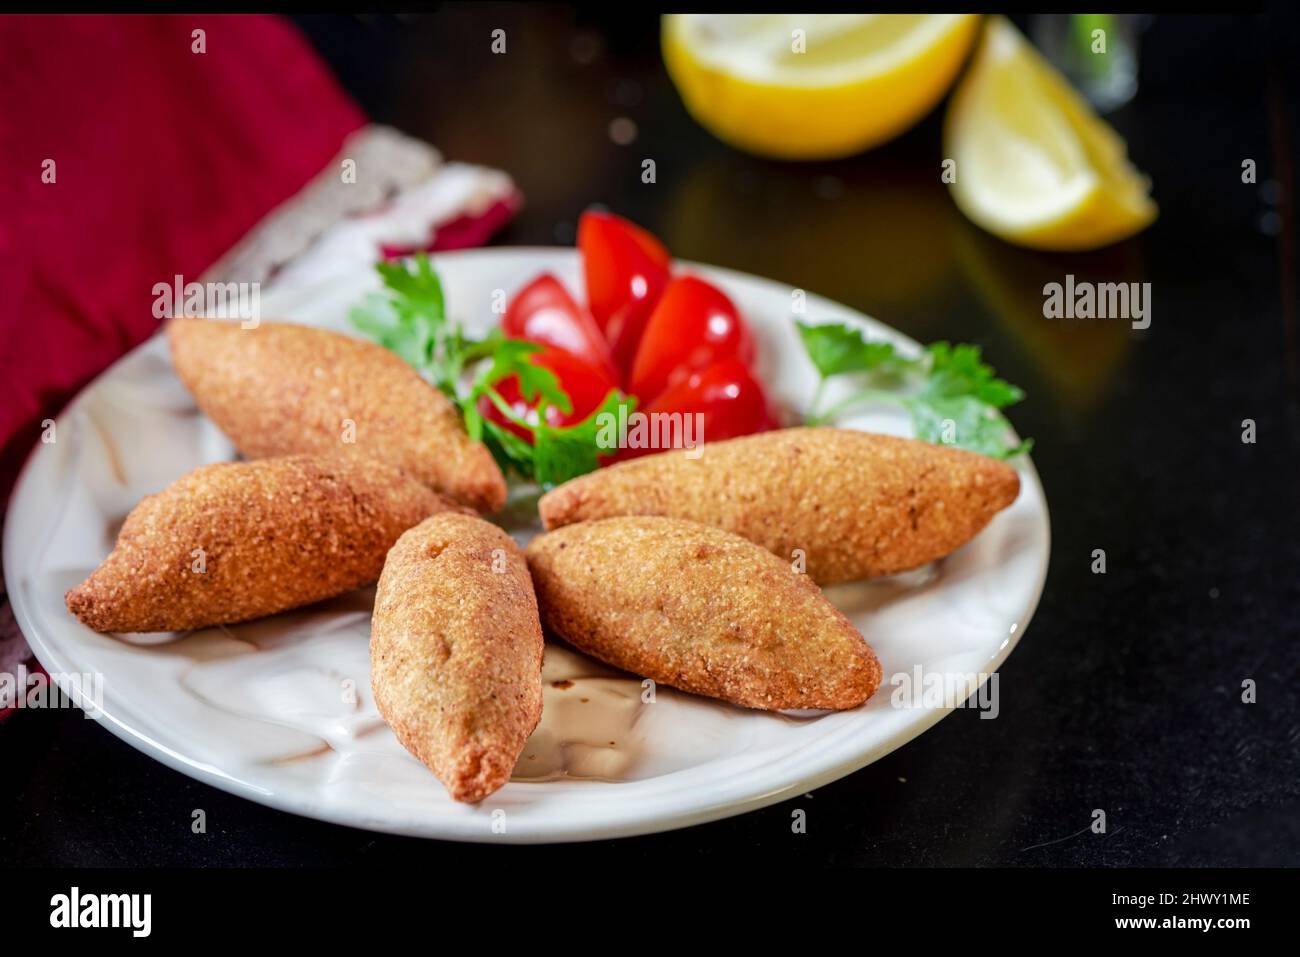 Tradicional comida frita preparada con bulgur y carne en un plato con ensaladas, primeros planos, fotografía de la vida fija Foto de stock